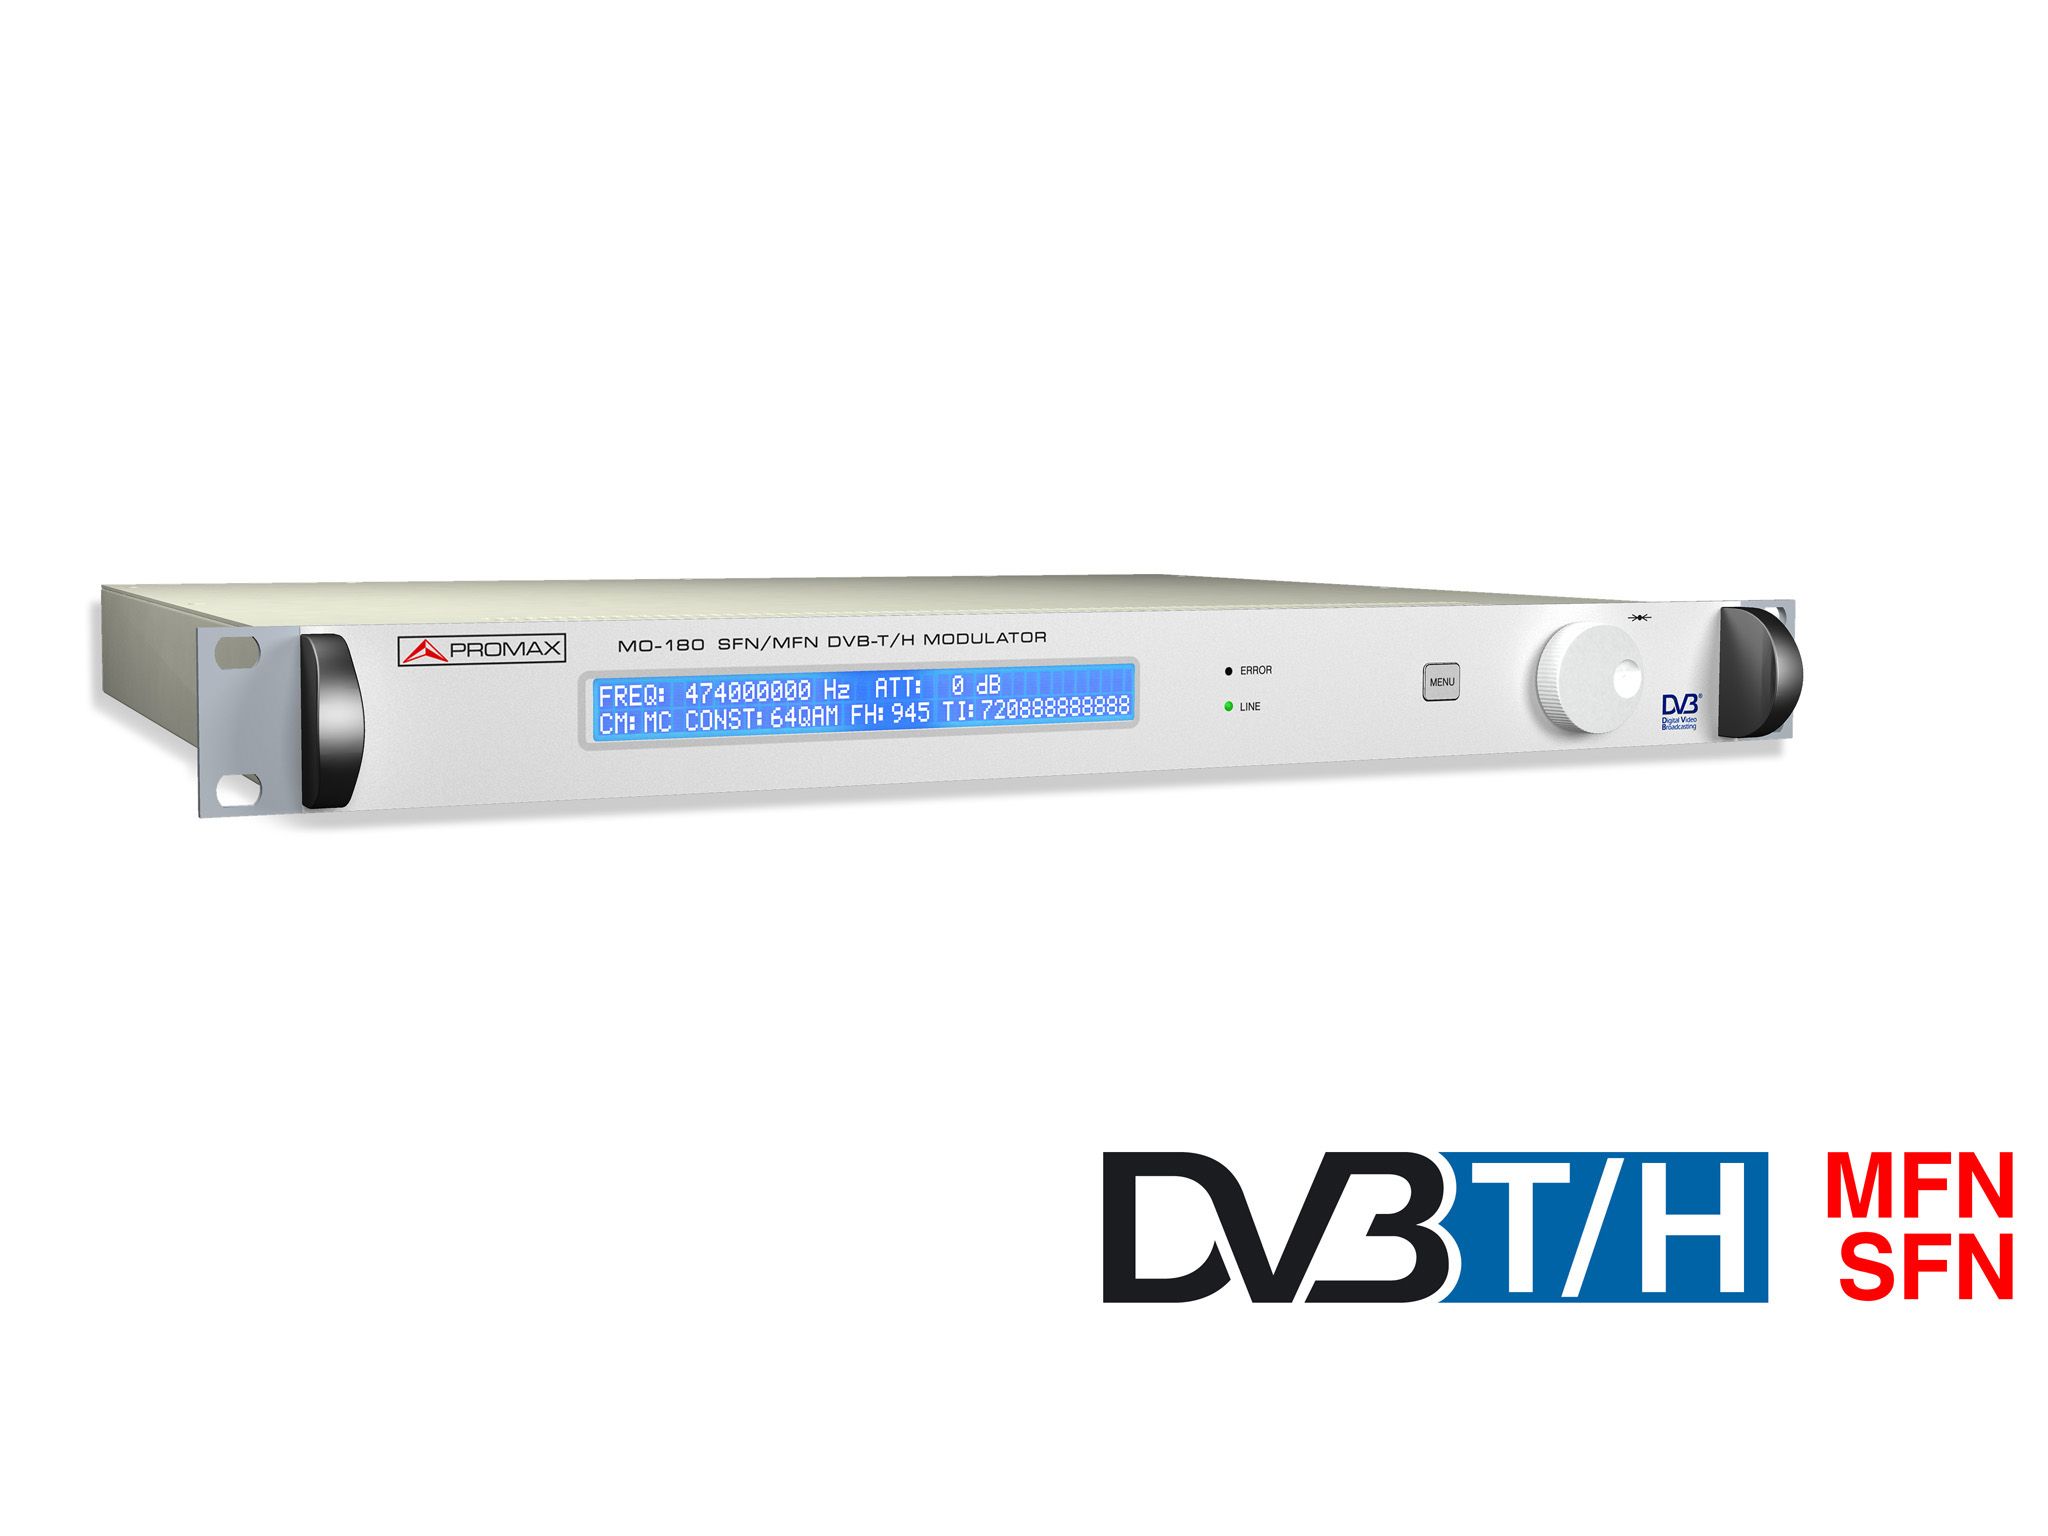 MO-180: Modulateur DVB-T et DVB-H